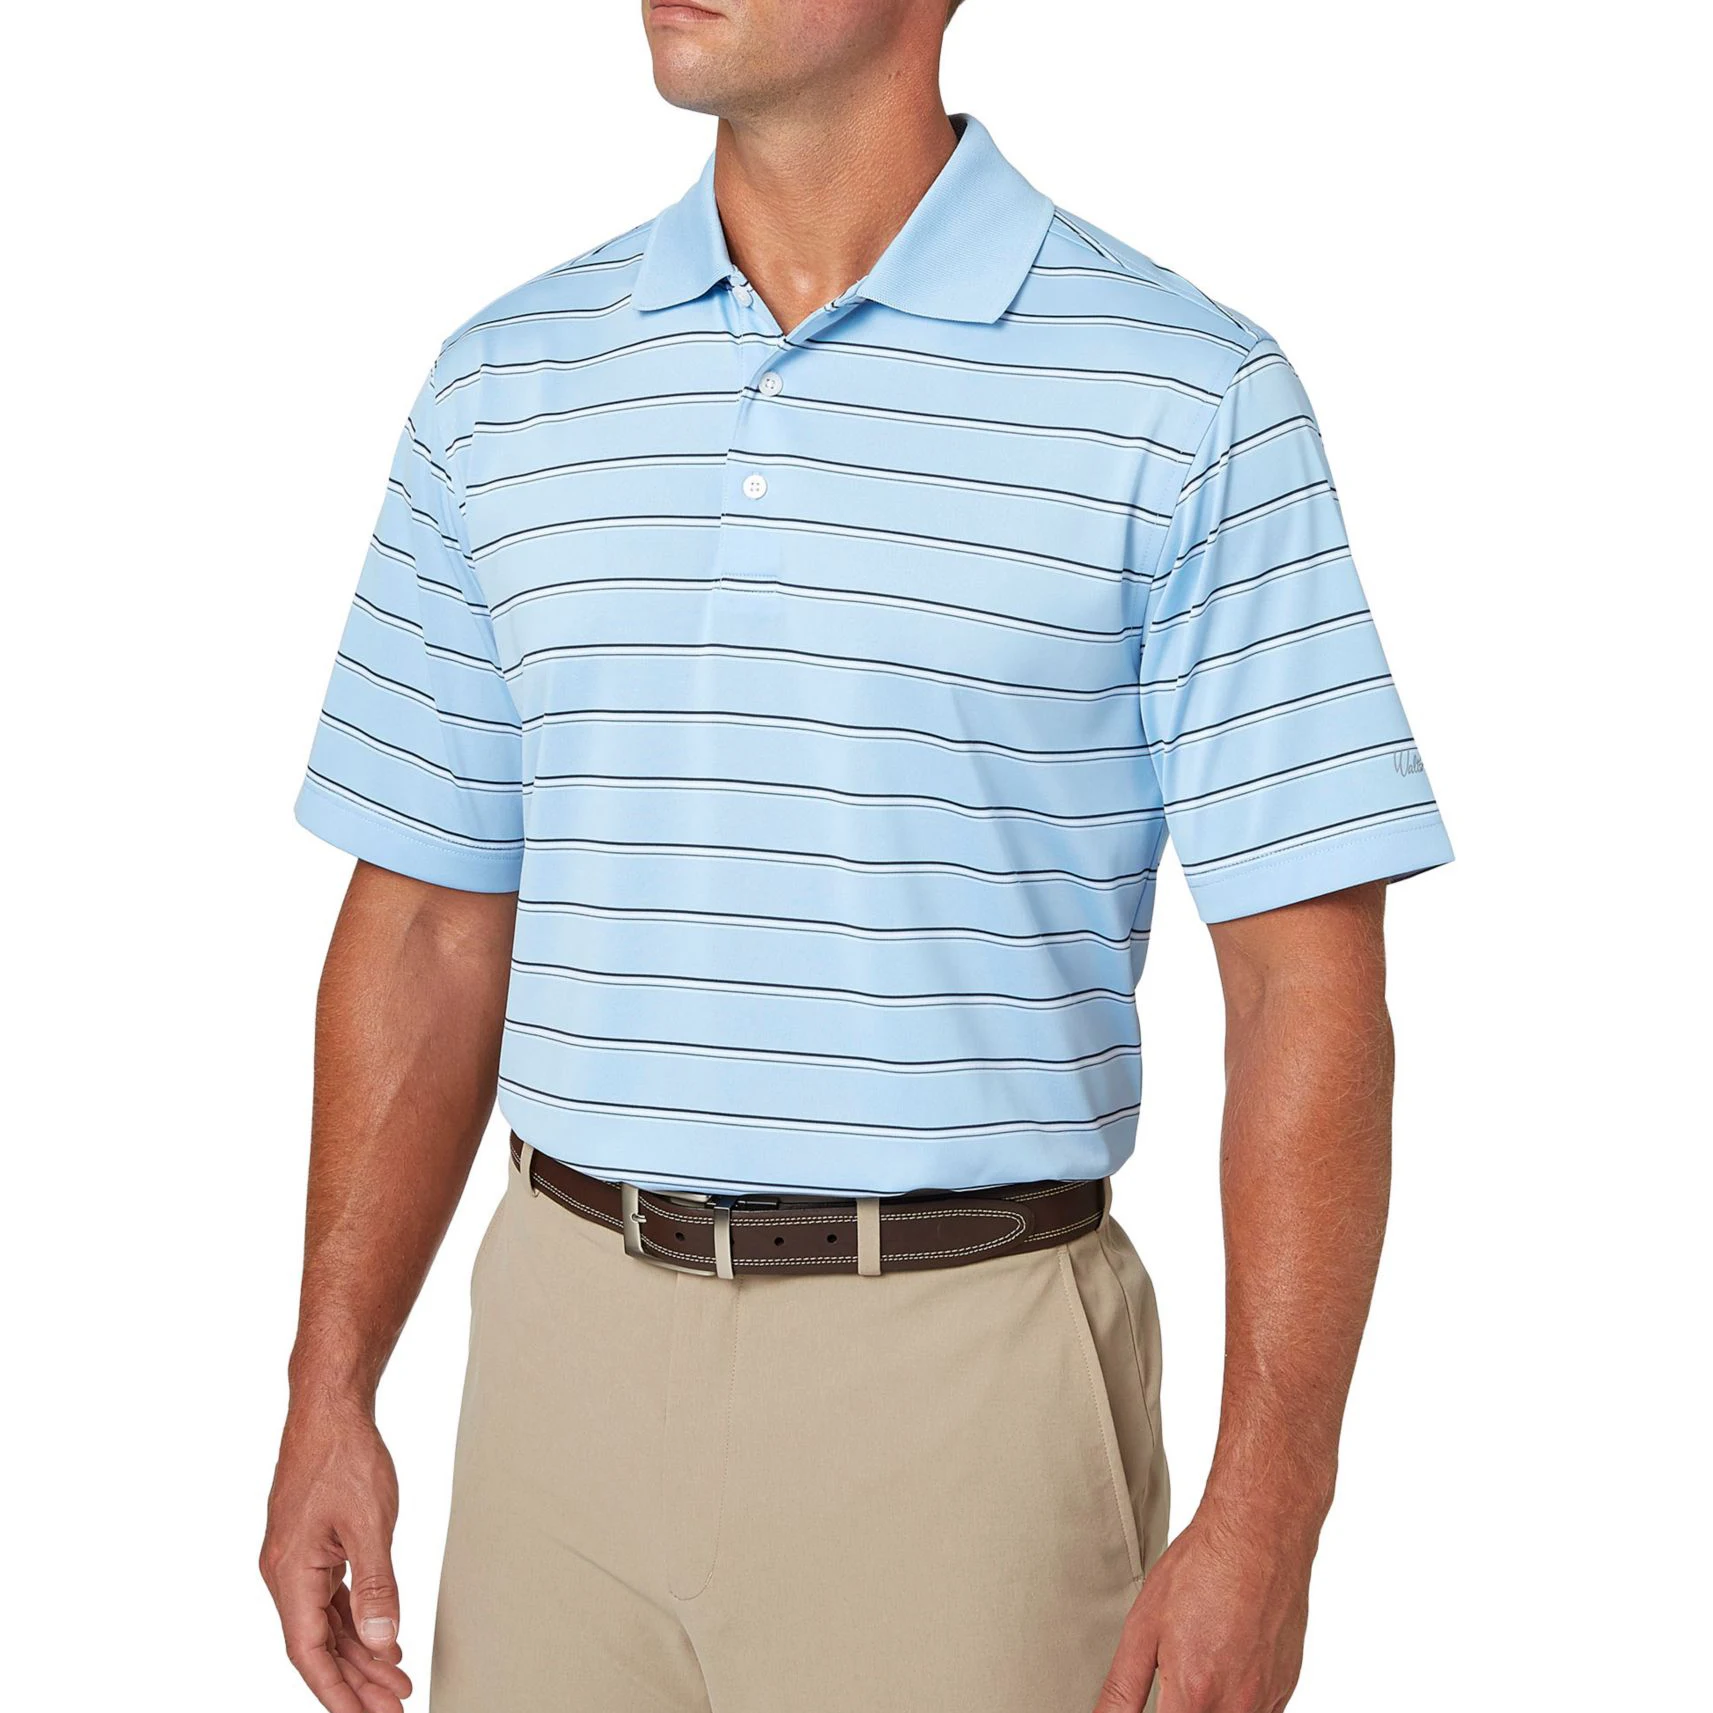 Мужские рубашки-поло по оптовым ценам прохладный, быстро сохнет, впитывает пот и влагу цвет блока с коротким рукавом; Комплект спортивной одежды с длинными рукавами рубашки-поло для гольфа и тенниса, футболка